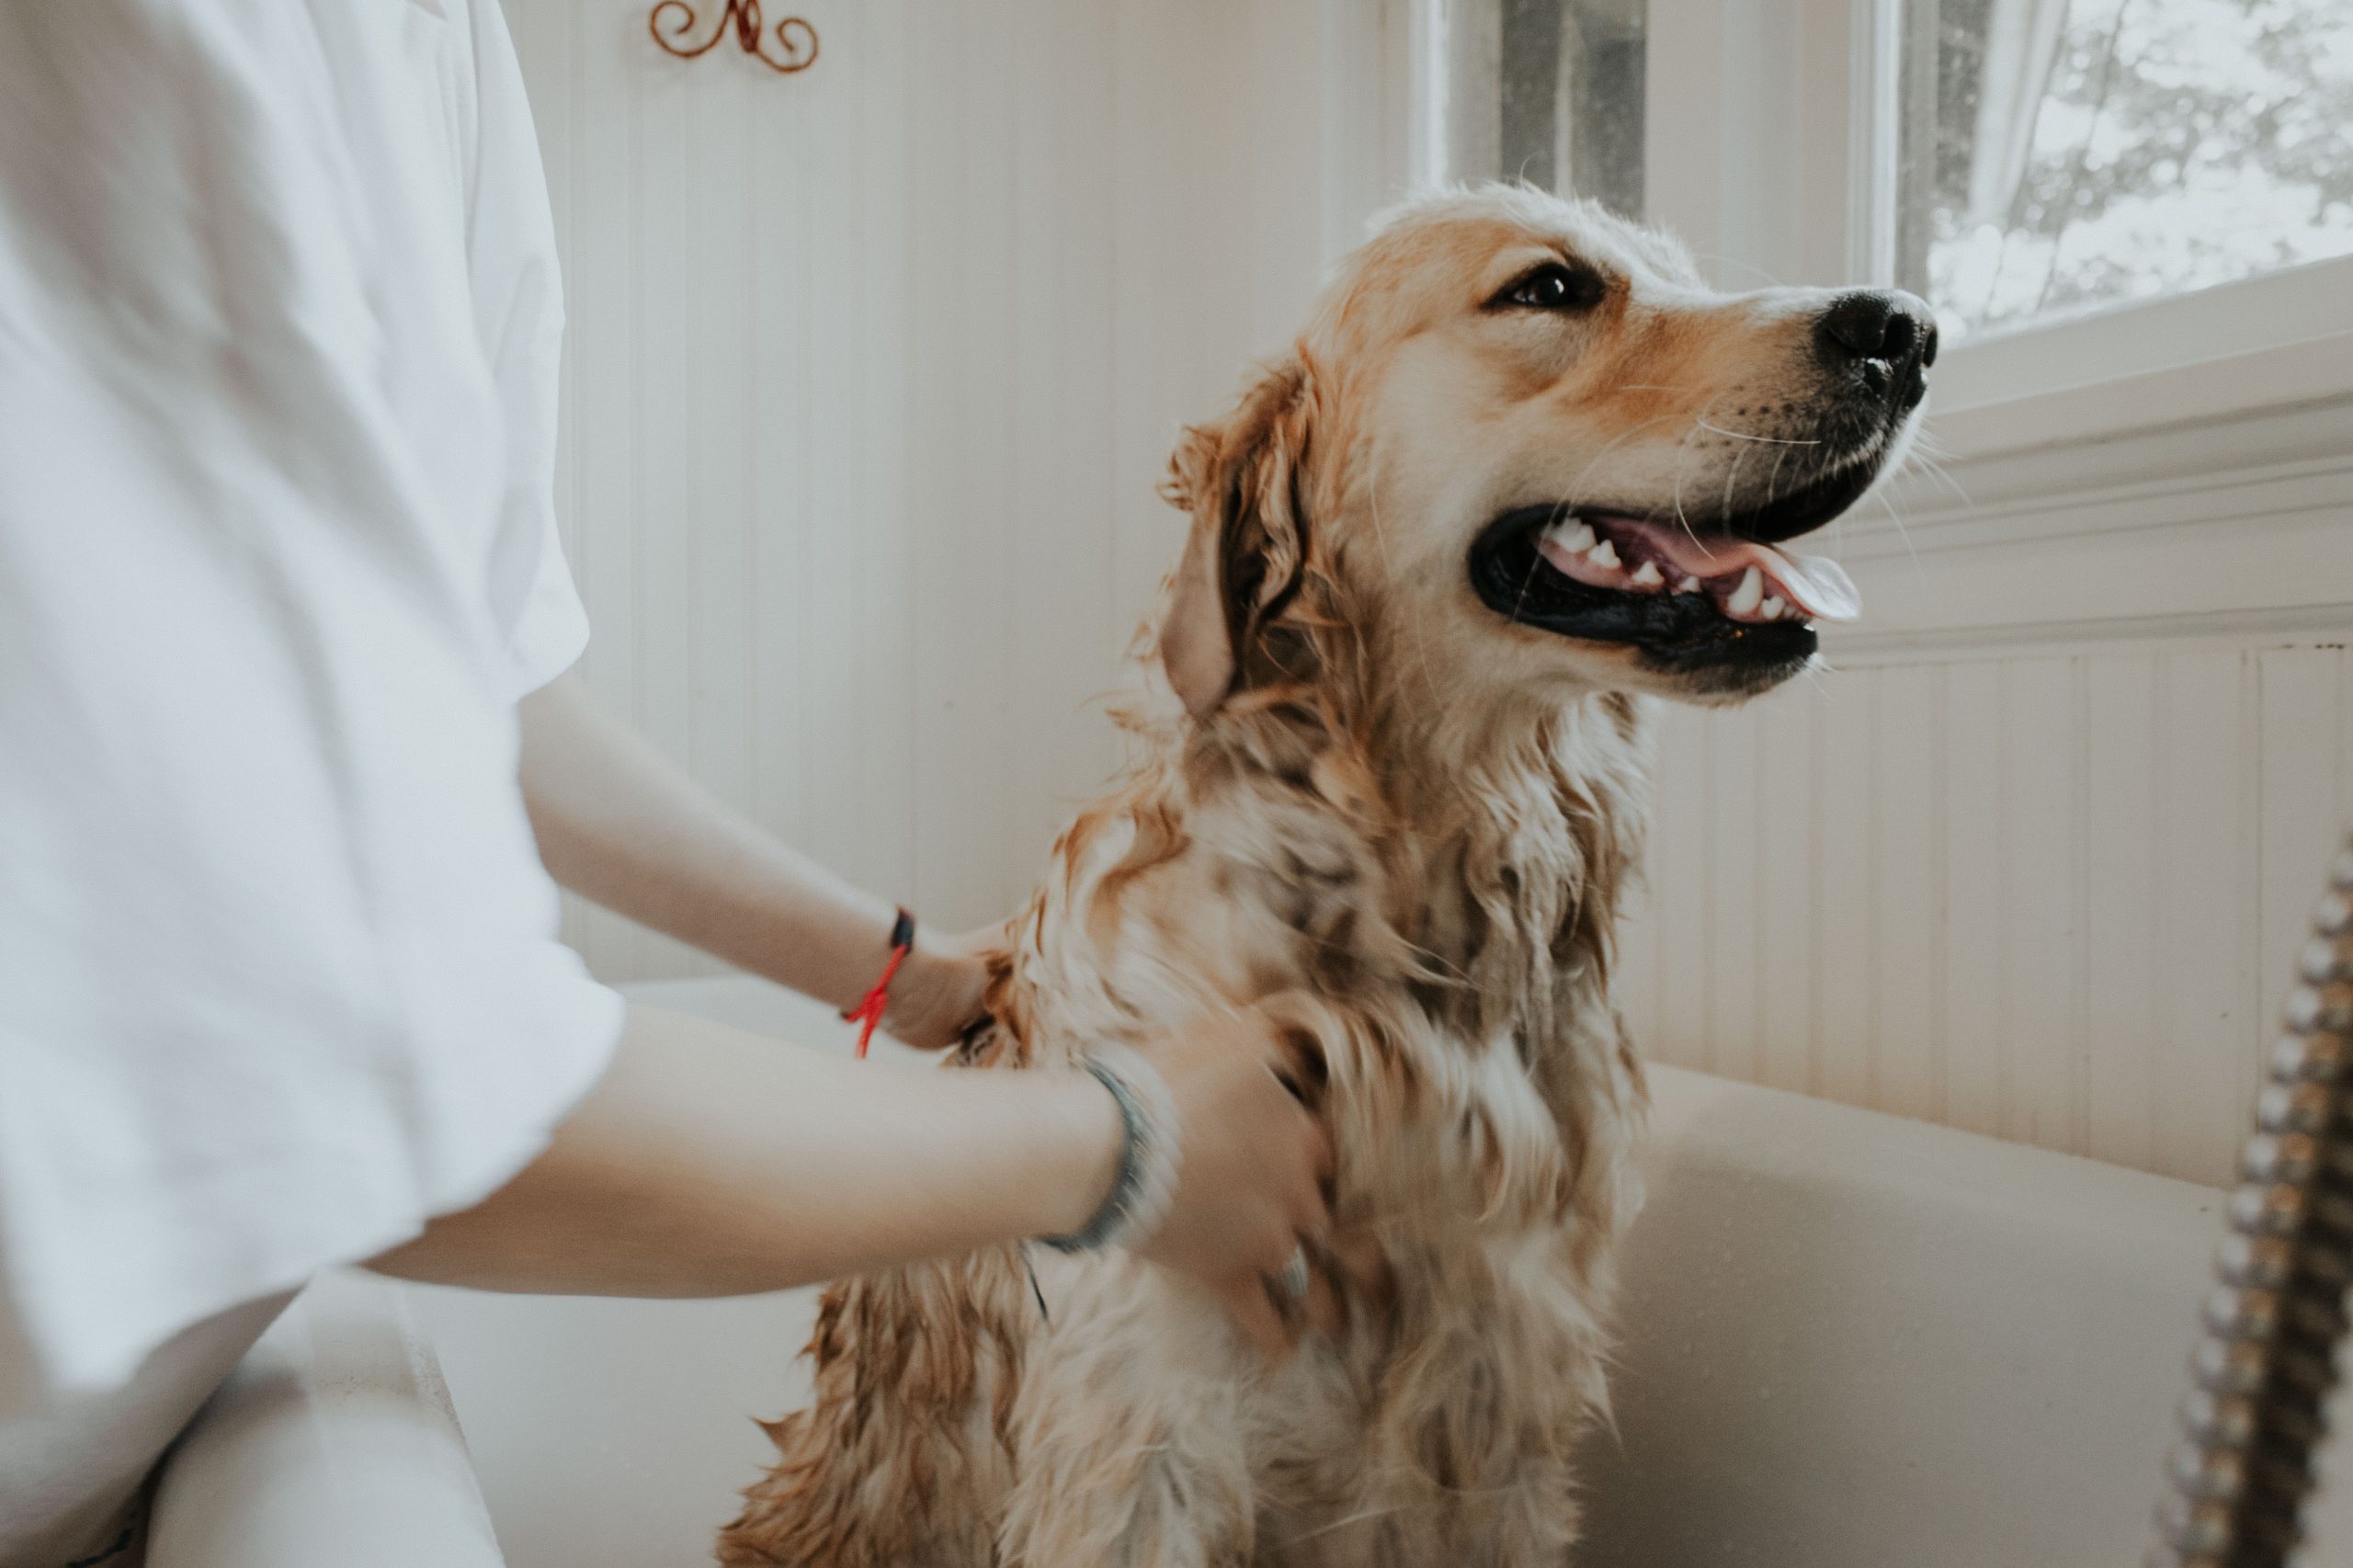 How often should I bathe my dog?